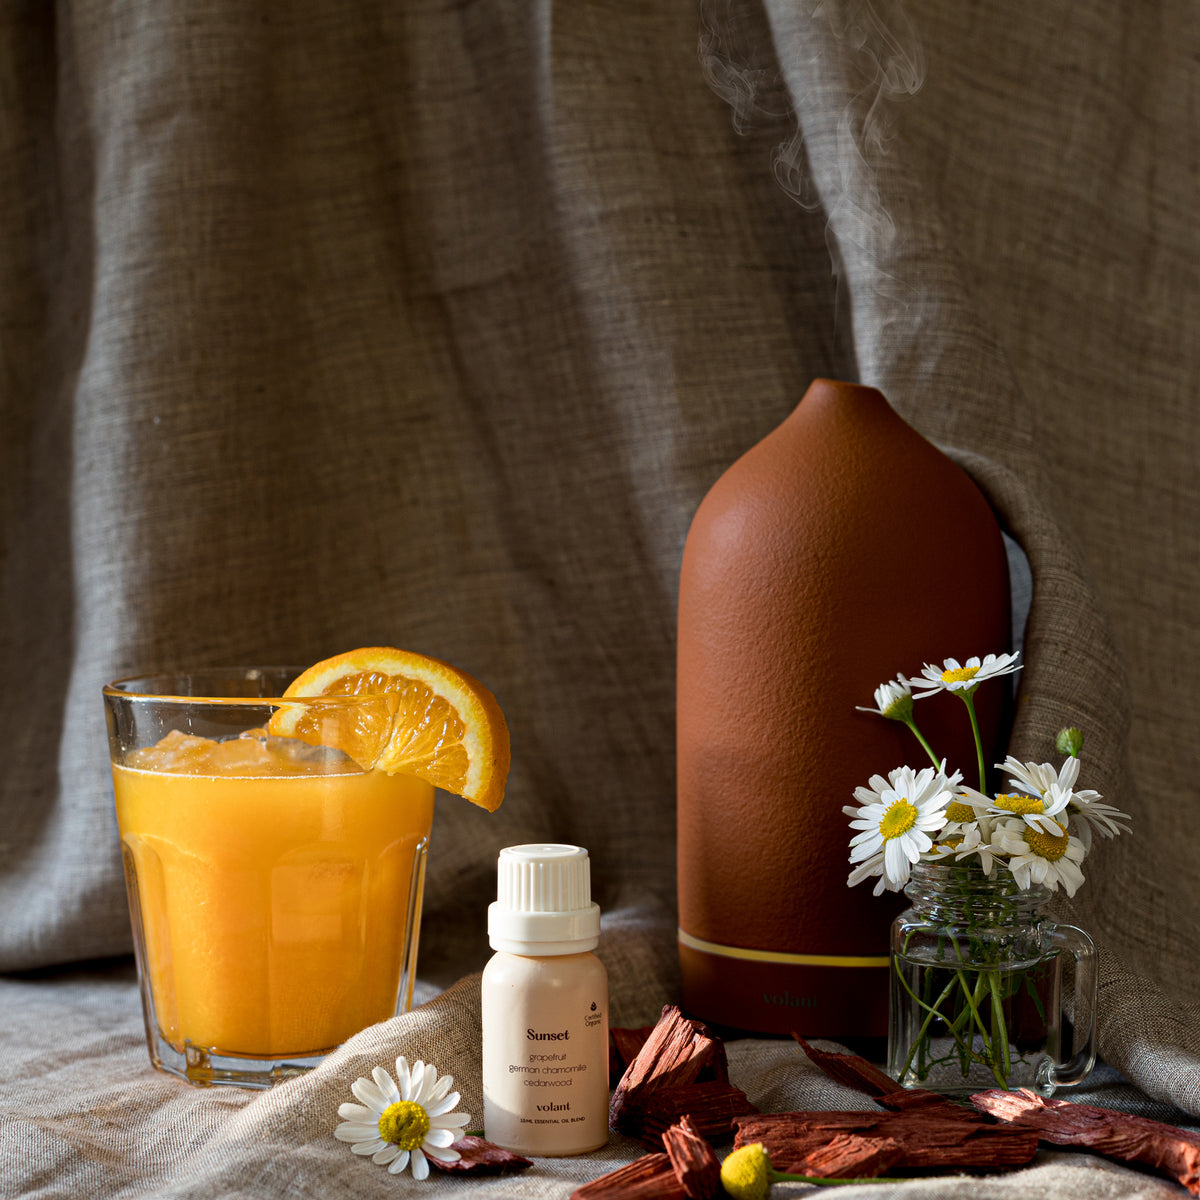 Volant Sunset flaska med eterisk oljeblandning och lerdiffusor. Den är gjord av ren cederträ, tysk kamomill och grapefrukt och är inspirerad av drömmar, solnedgångar och uppfriskande vindar. 